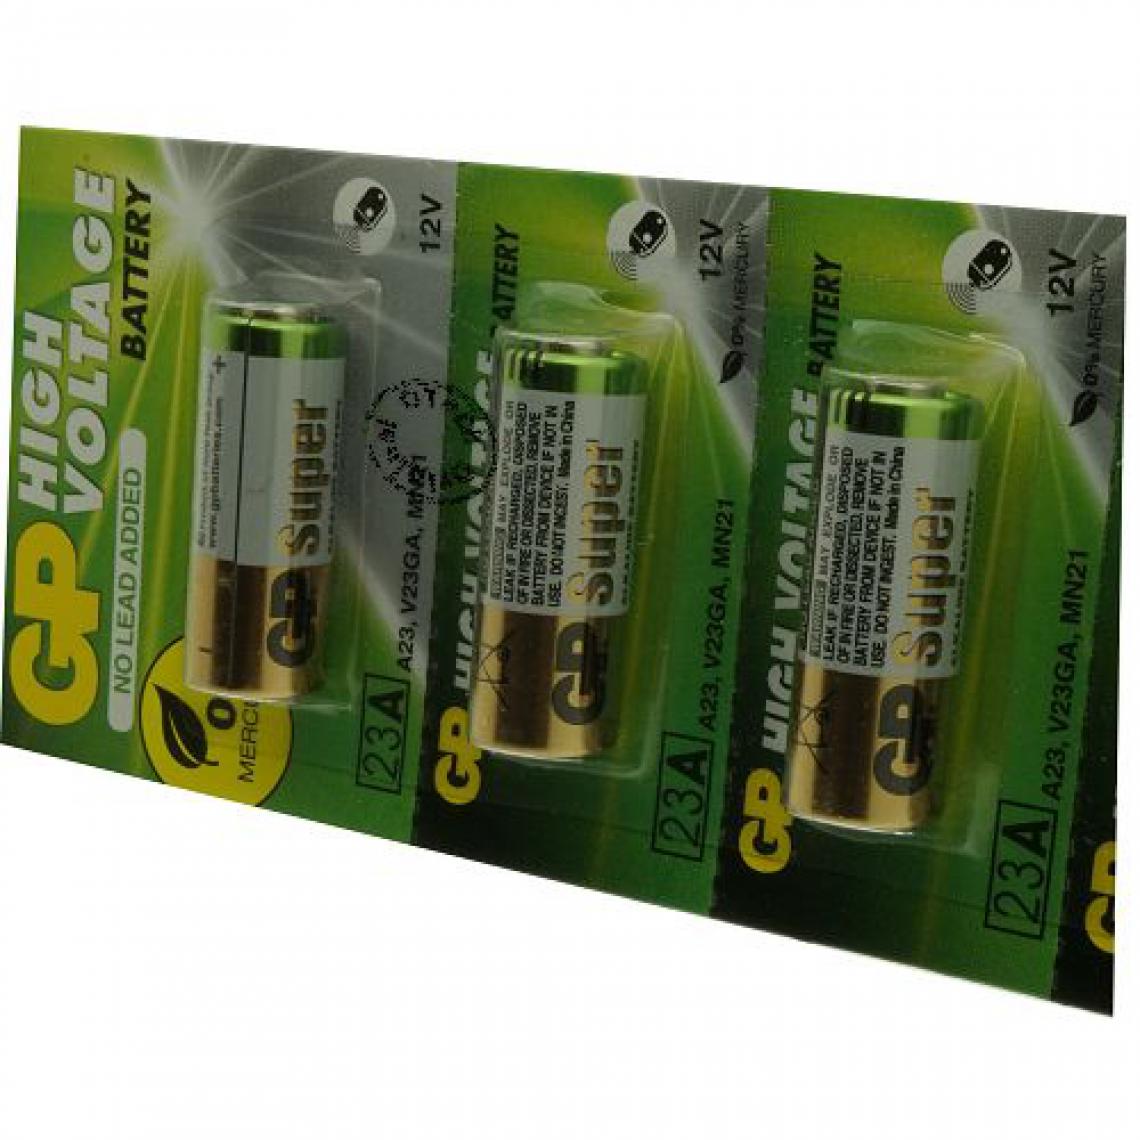 Otech - Pack de 5 piles GP pour OTECH 4891199042140 - Piles rechargeables